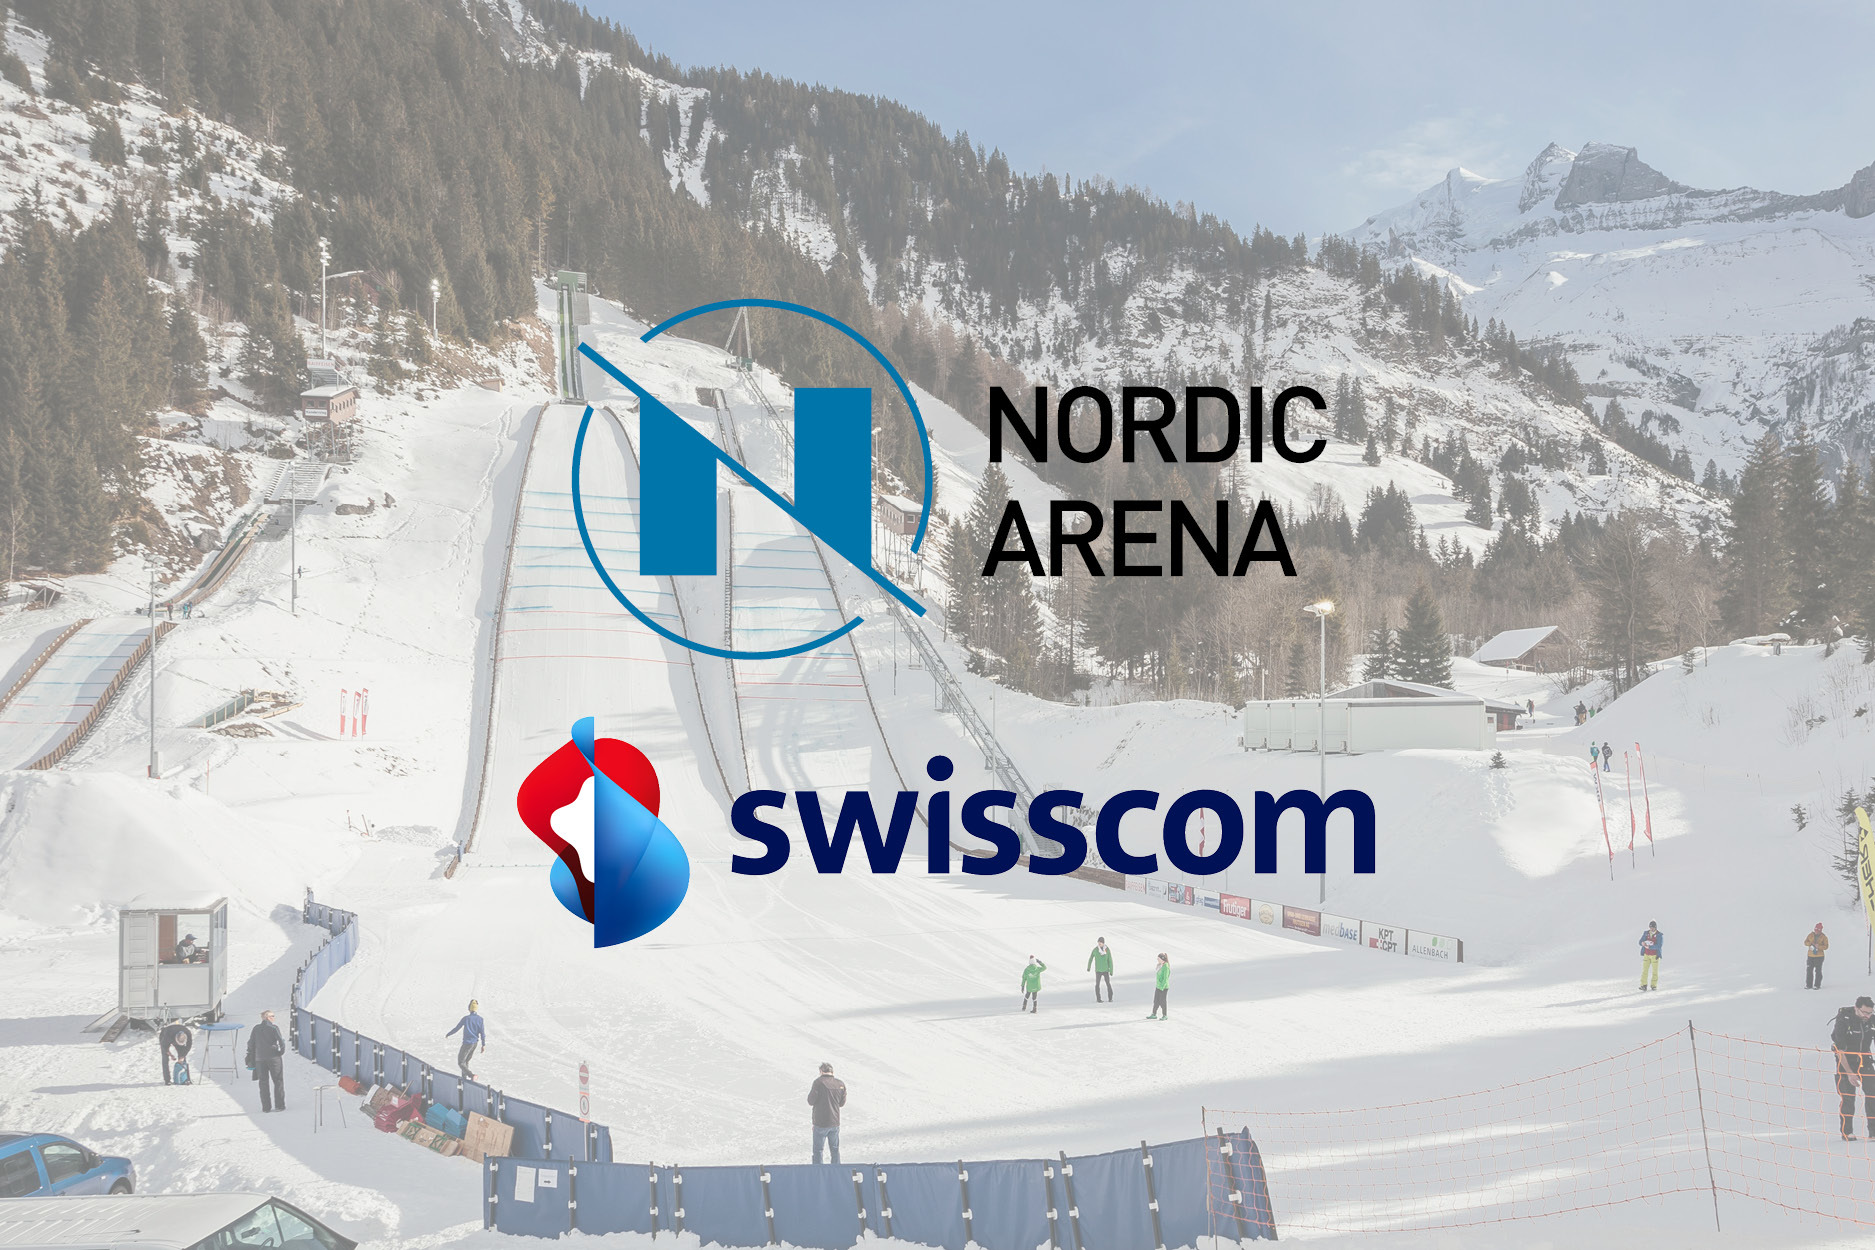 Medienmitteilung: Neuer Partner für die Nordic Arena